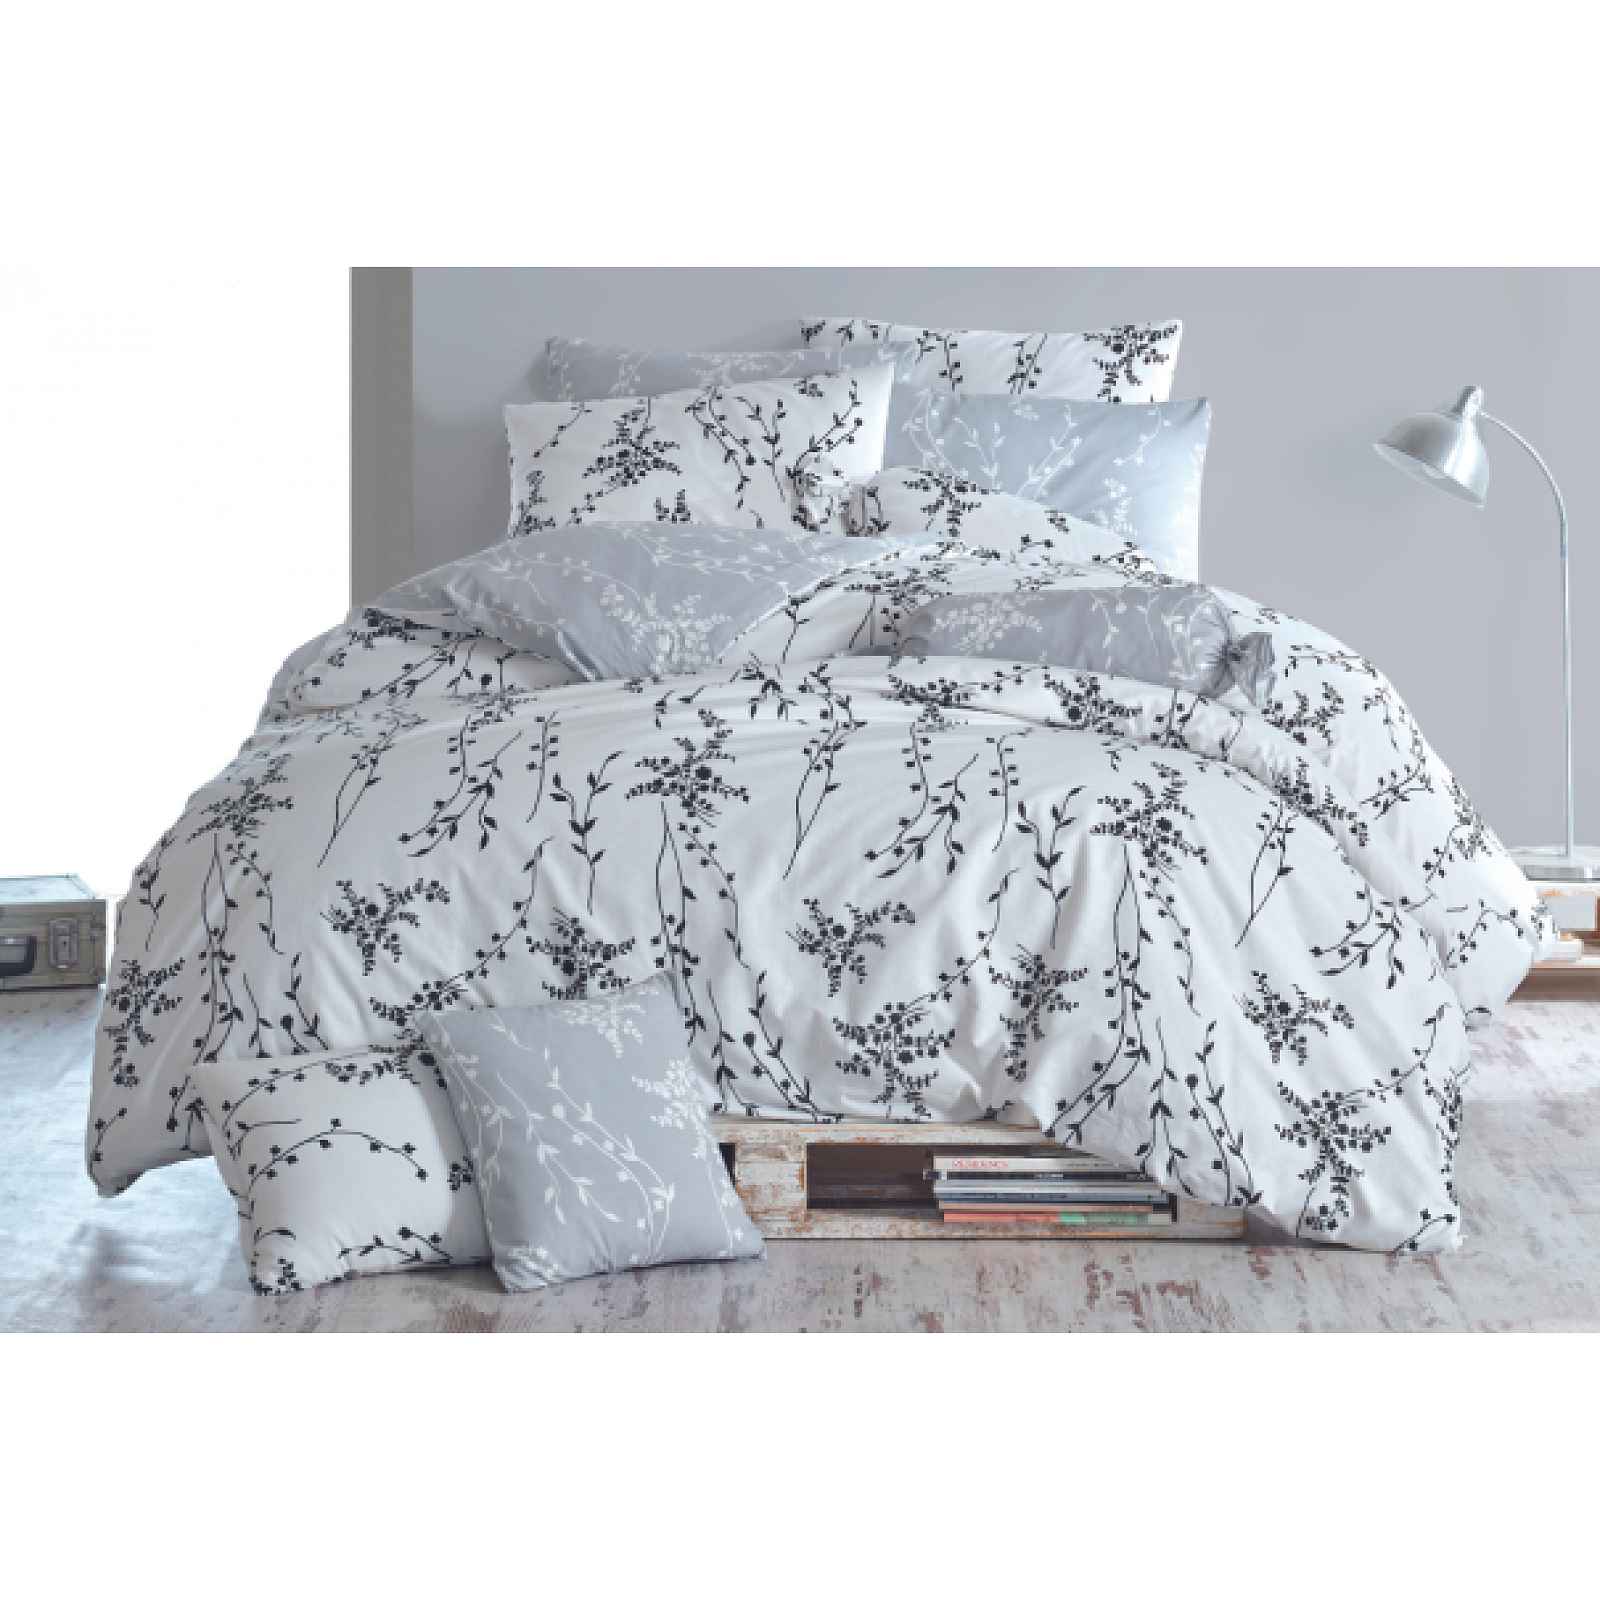 Klinmam Home Blumen V4 Grey povlečení z Renforcé bavlny, jemný květinový vzor, 140x200 cm + 50x70 cm